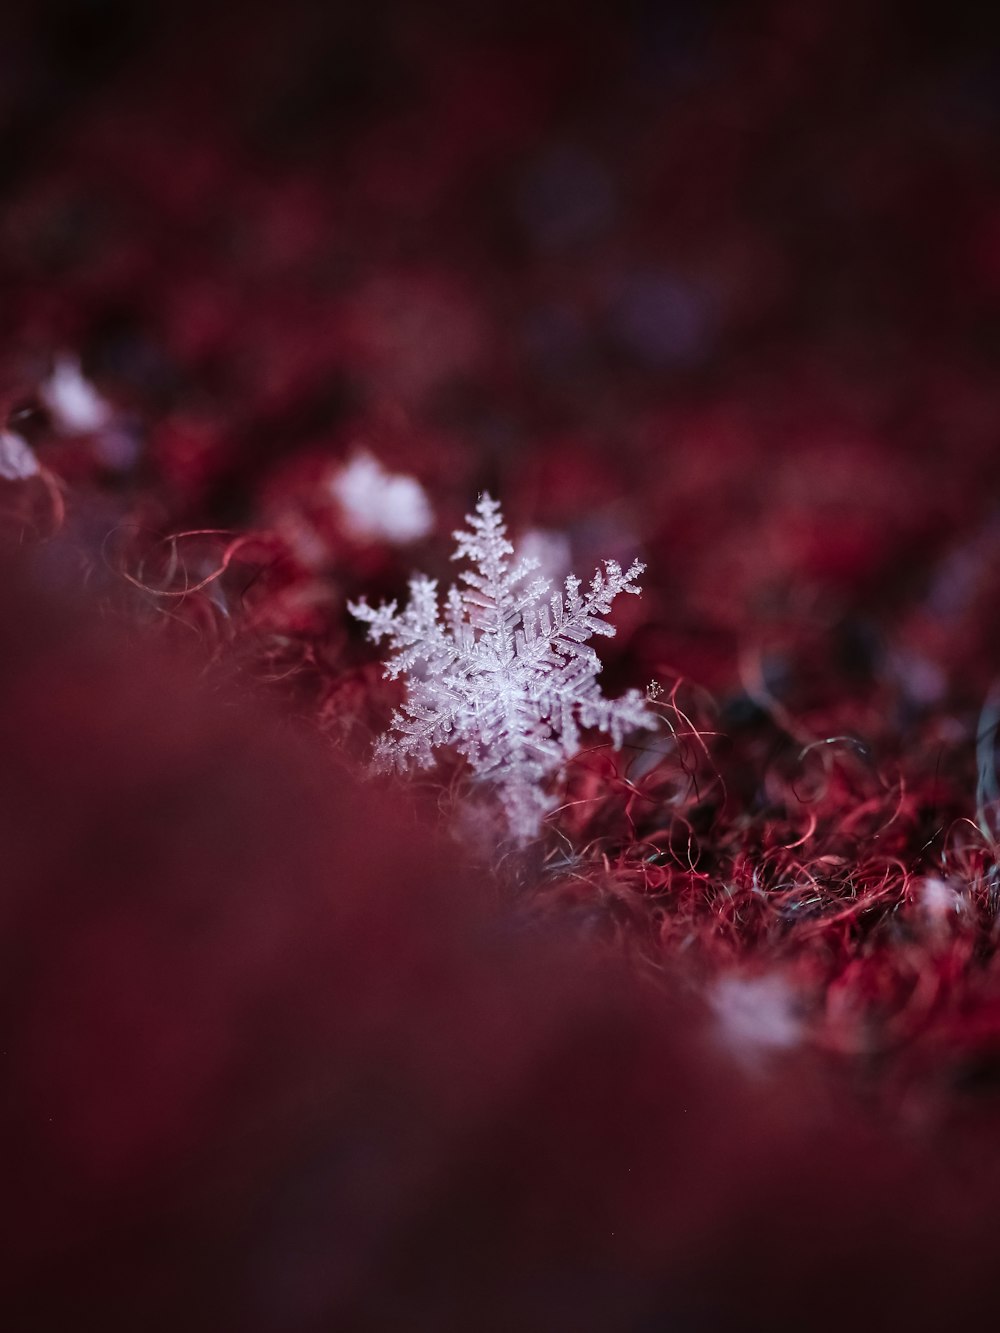 white snow flakes on red textile